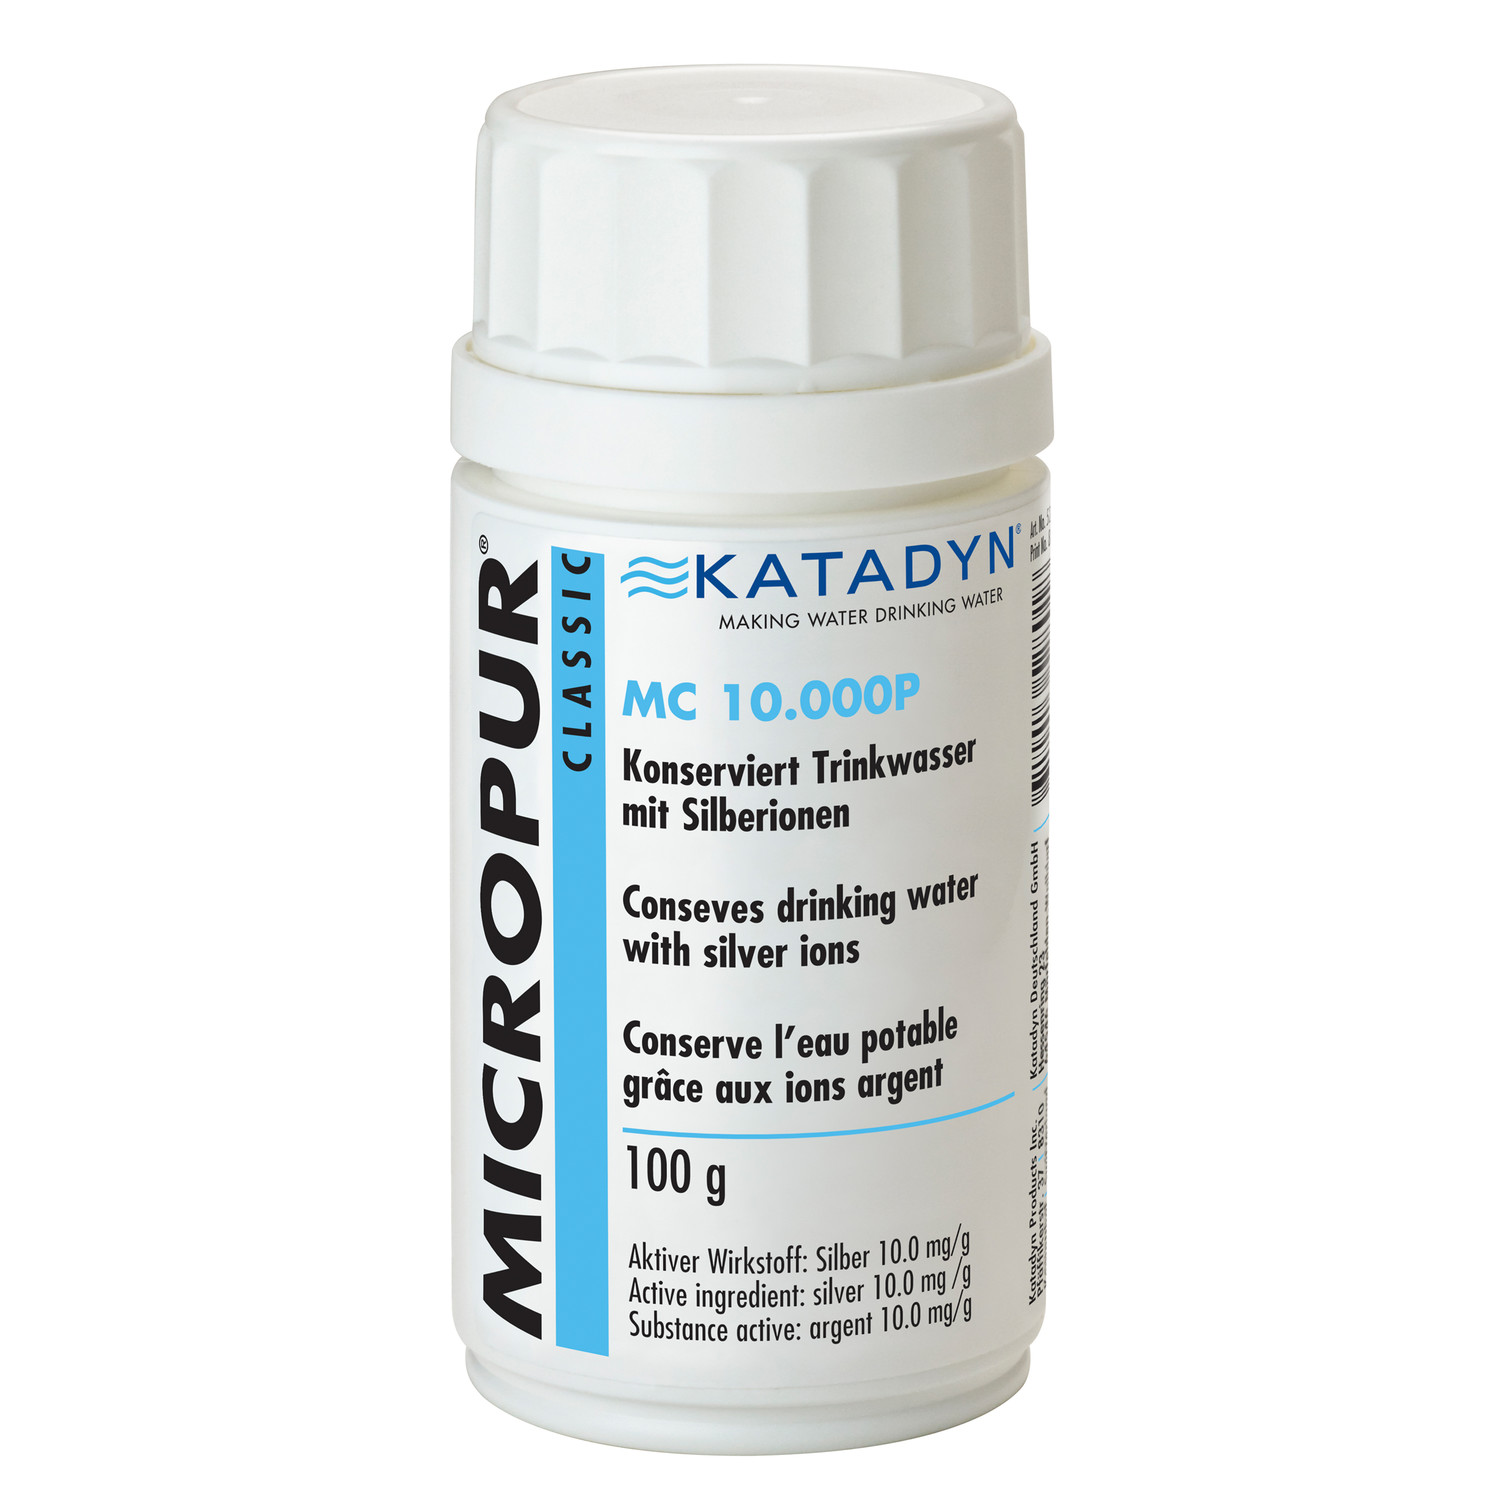 Katadyn Micropur Classic Trinkwasserkonservierung MC 10.000P Pulver